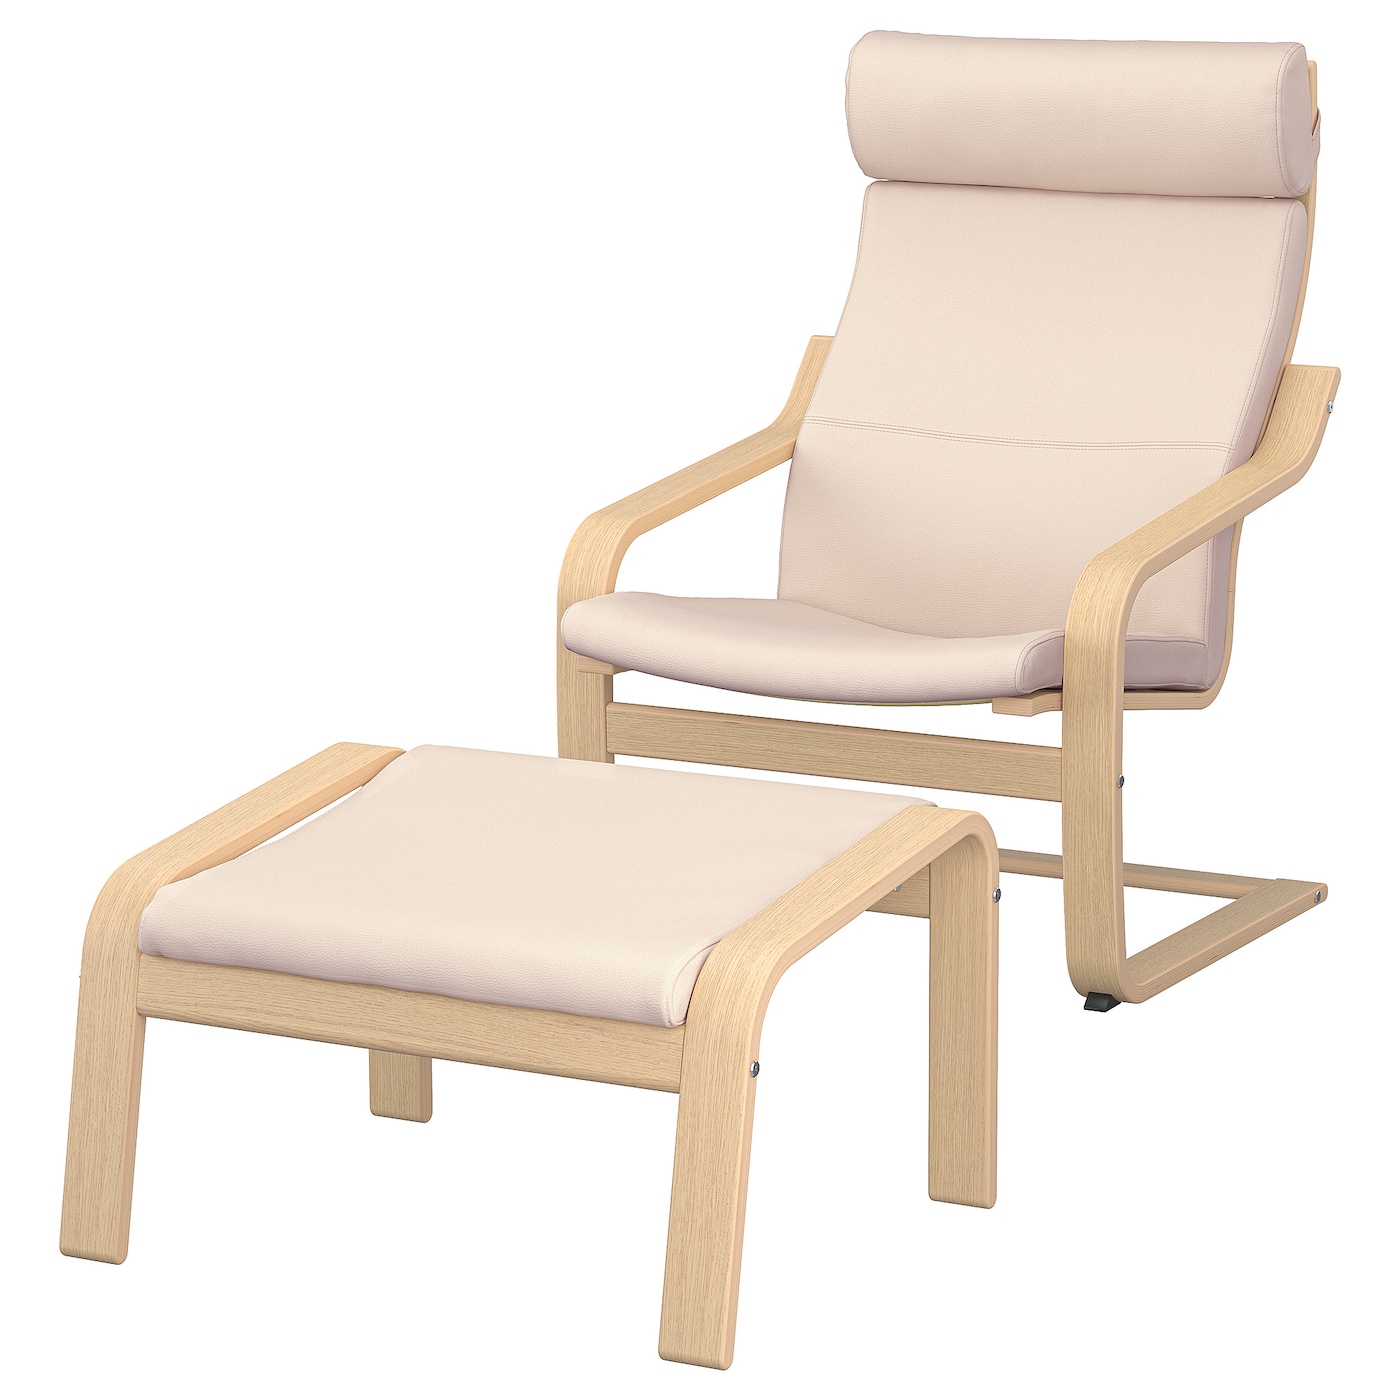 ПОЭНГ Кресло и подставка для ног, дубовый шпон светлый/Глянец натуральный белый POÄNG IKEA